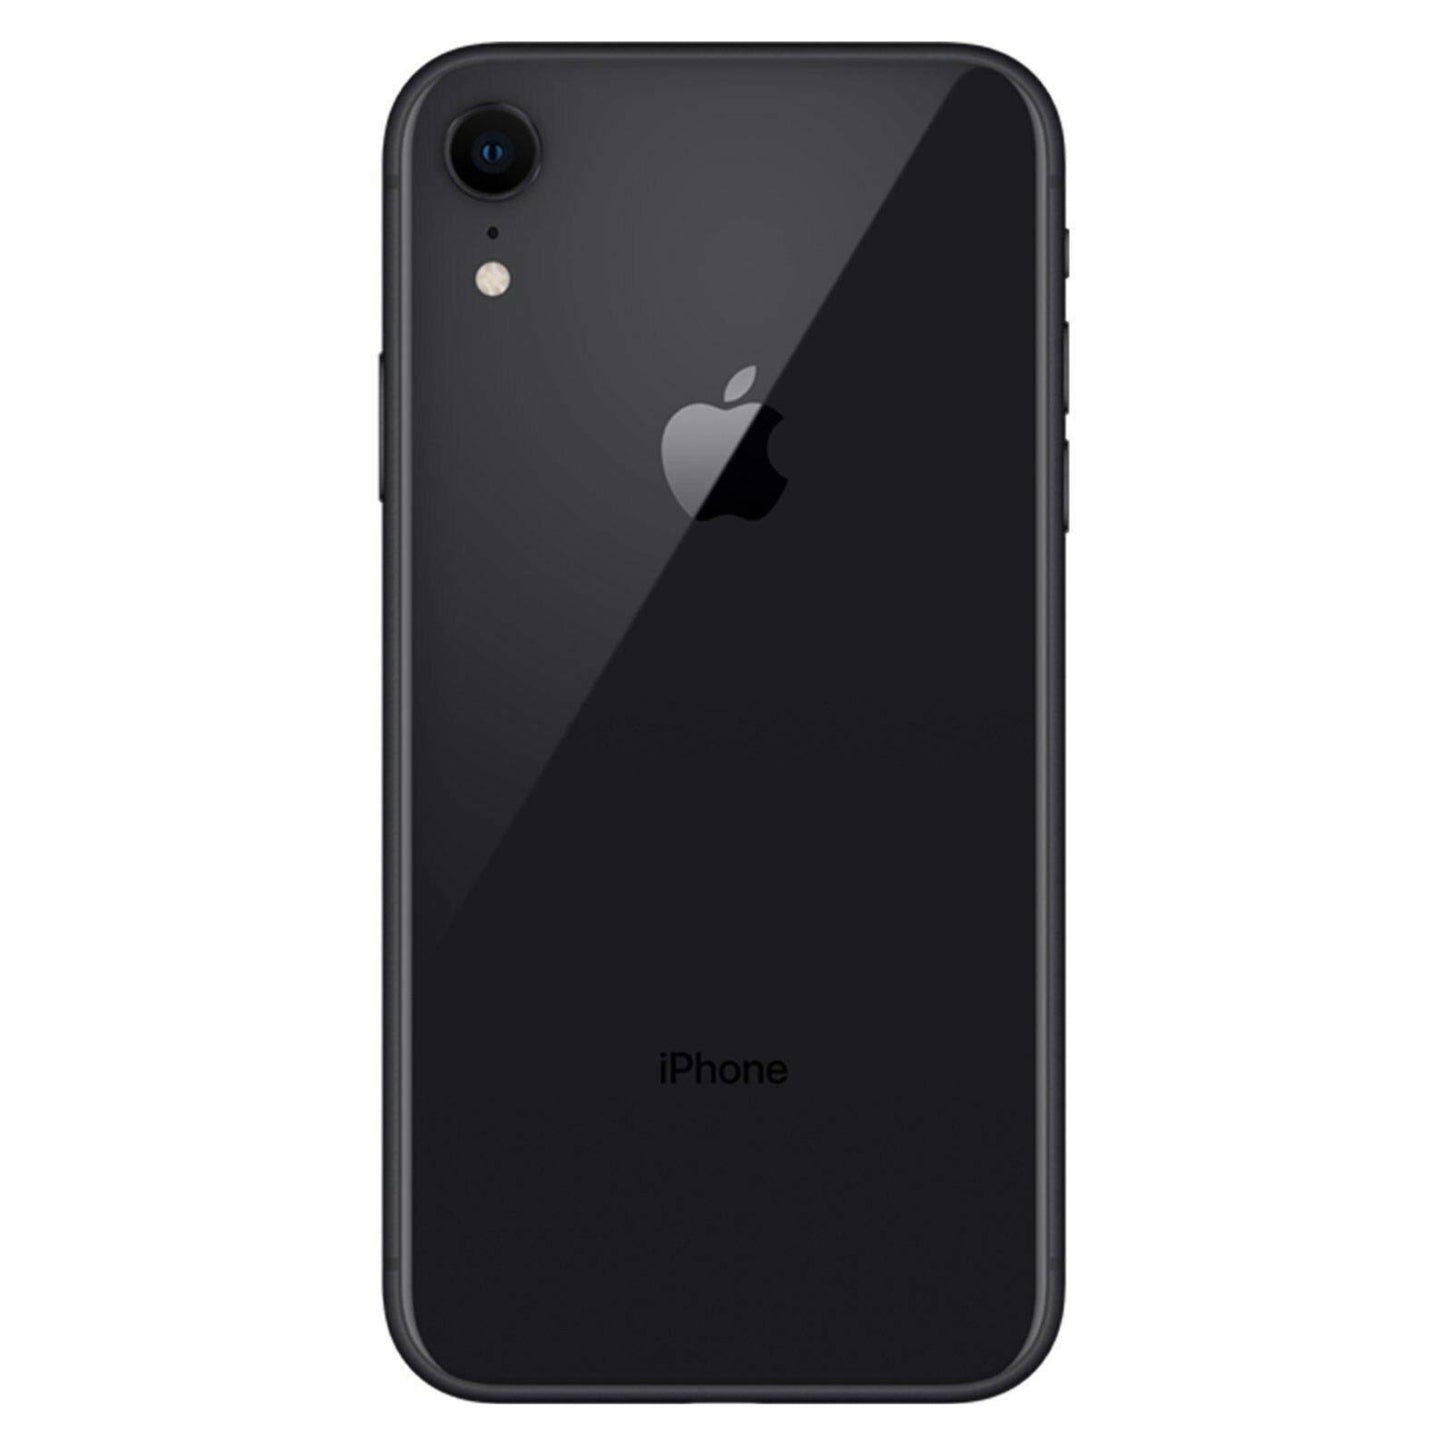 iPhone XR Black 256GB (Unlocked) Pre-Owned